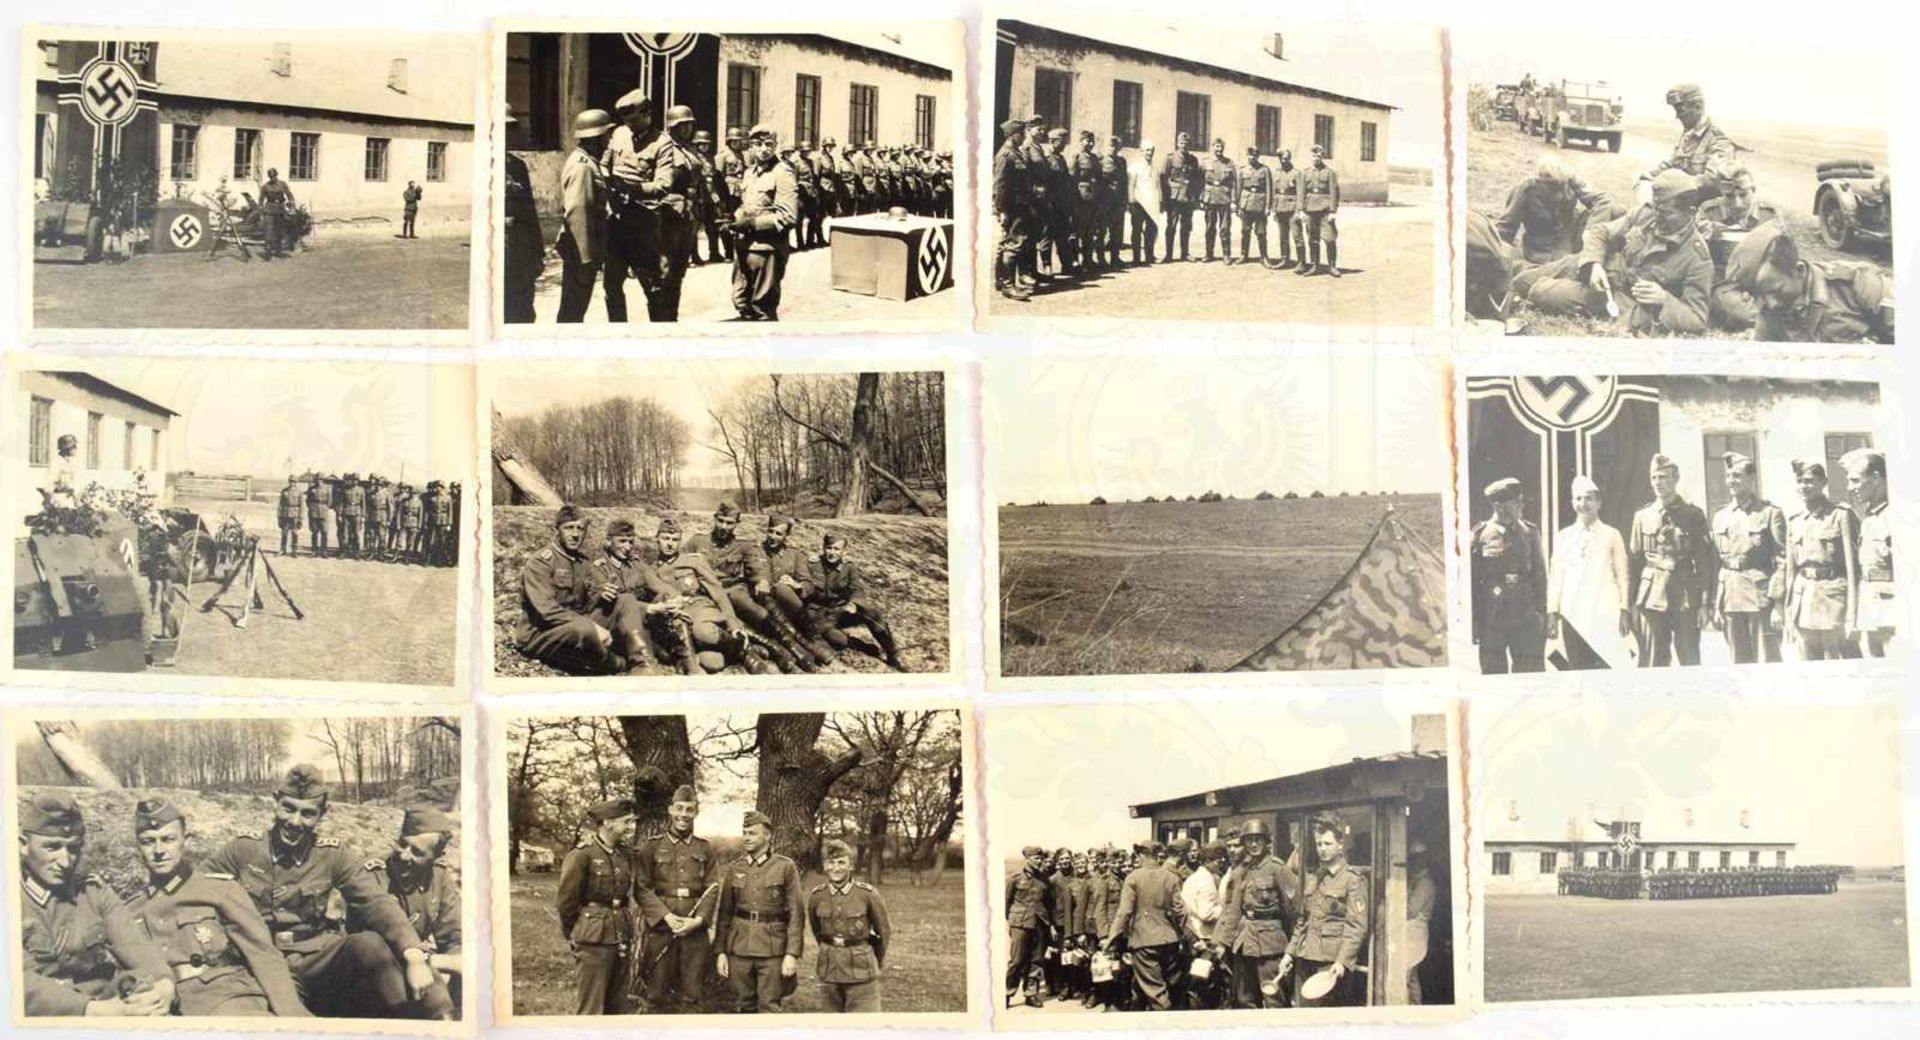 28 FOTOS PANZERJÄGERABTEILUNG 16, (16. Panzer-Division), Ordenverleihung, Offiziere, Panzer, Pak- - Bild 2 aus 2